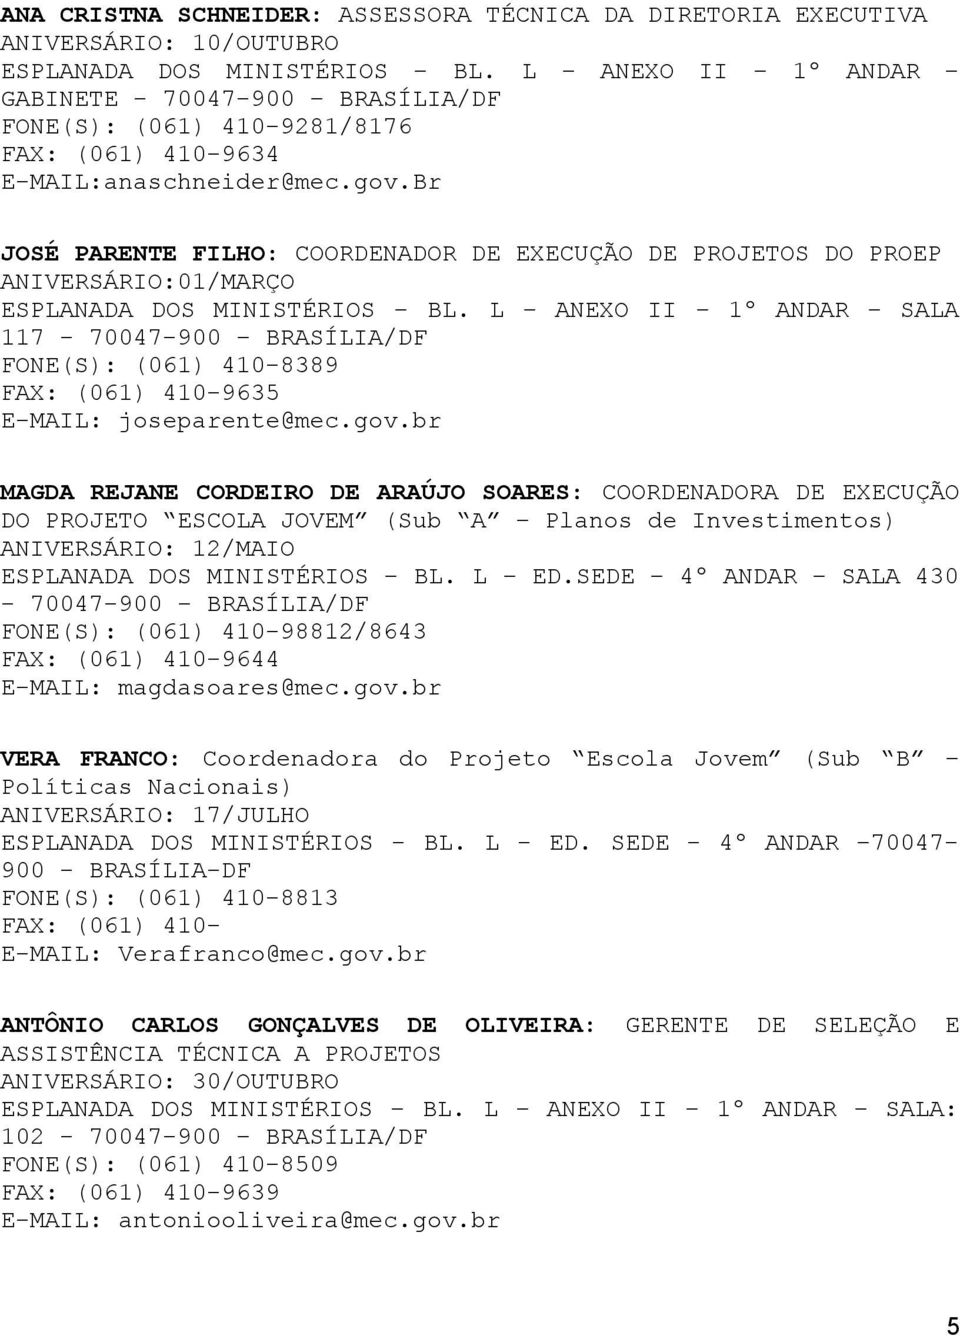 Br JOSÉ PARENTE FILHO: COORDENADOR DE EXECUÇÃO DE PROJETOS DO PROEP ANIVERSÁRIO:01/MARÇO 117-70047-900 BRASÍLIA/DF FONE(S): (061) 410-8389 FAX: (061) 410-9635 E-MAIL: joseparente@mec.gov.